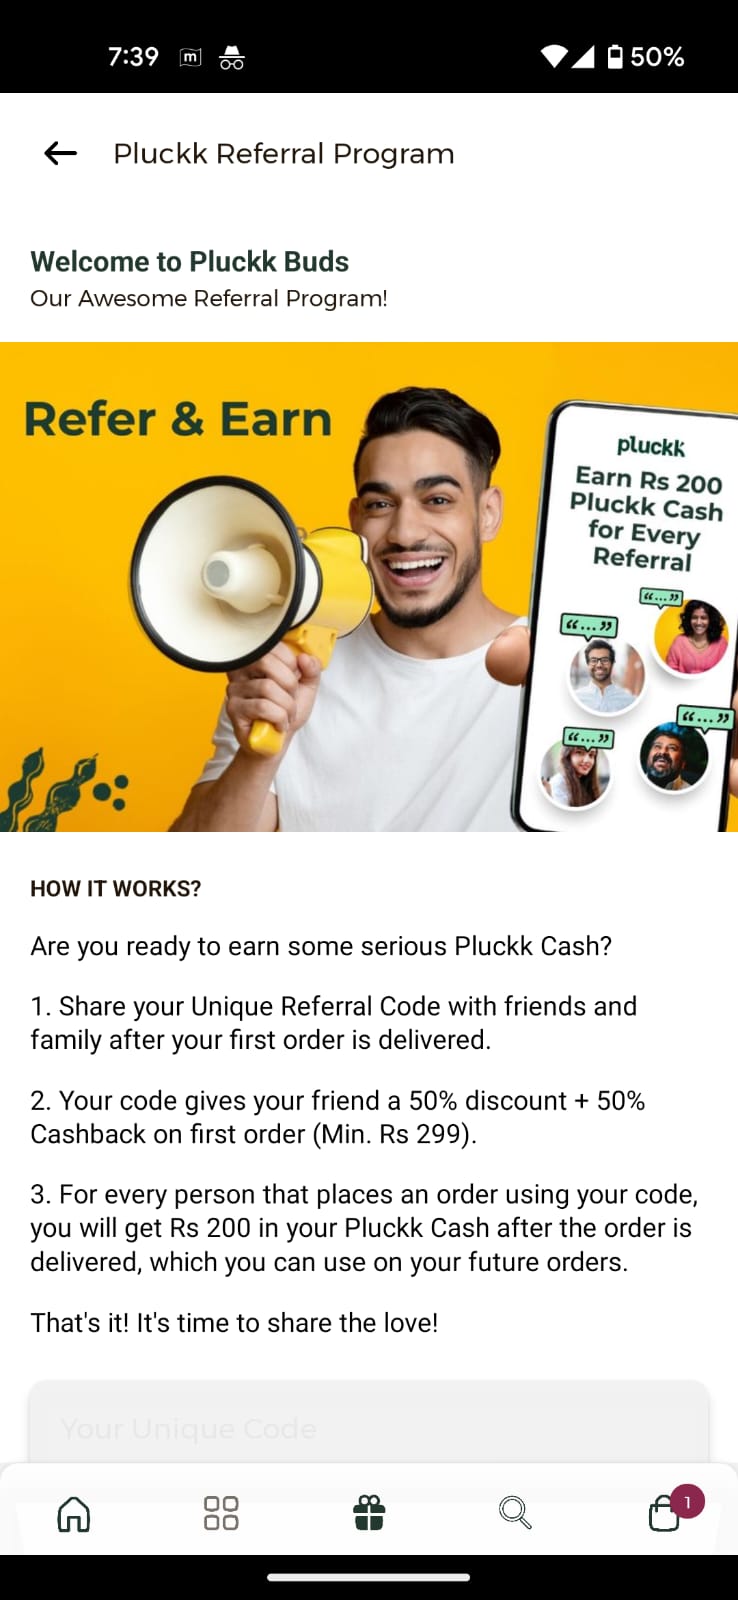 pluckk-refer-earn